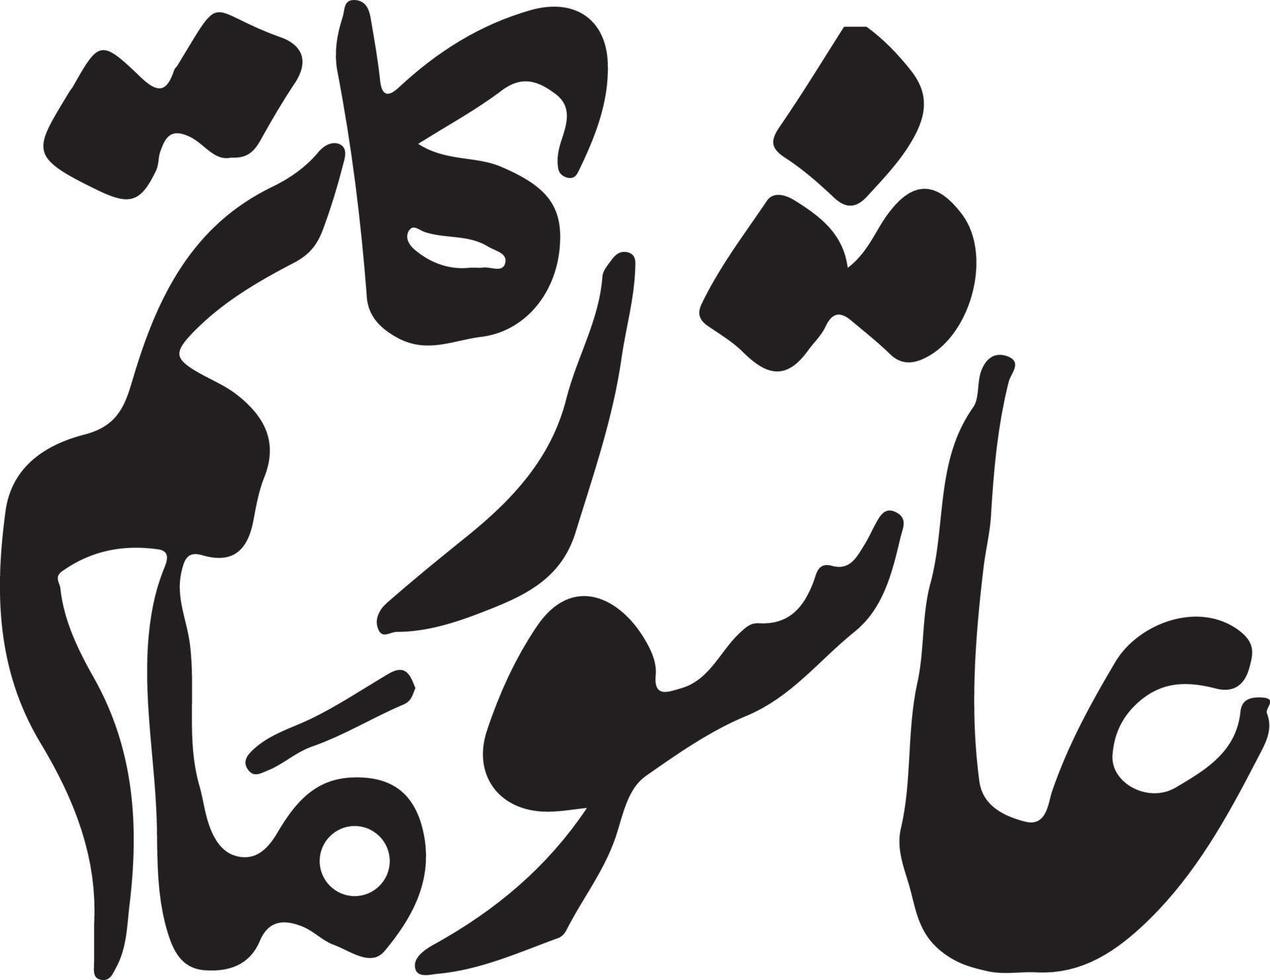 ashoor ka matam titre islamique ourdou calligraphie arabe vecteur gratuit